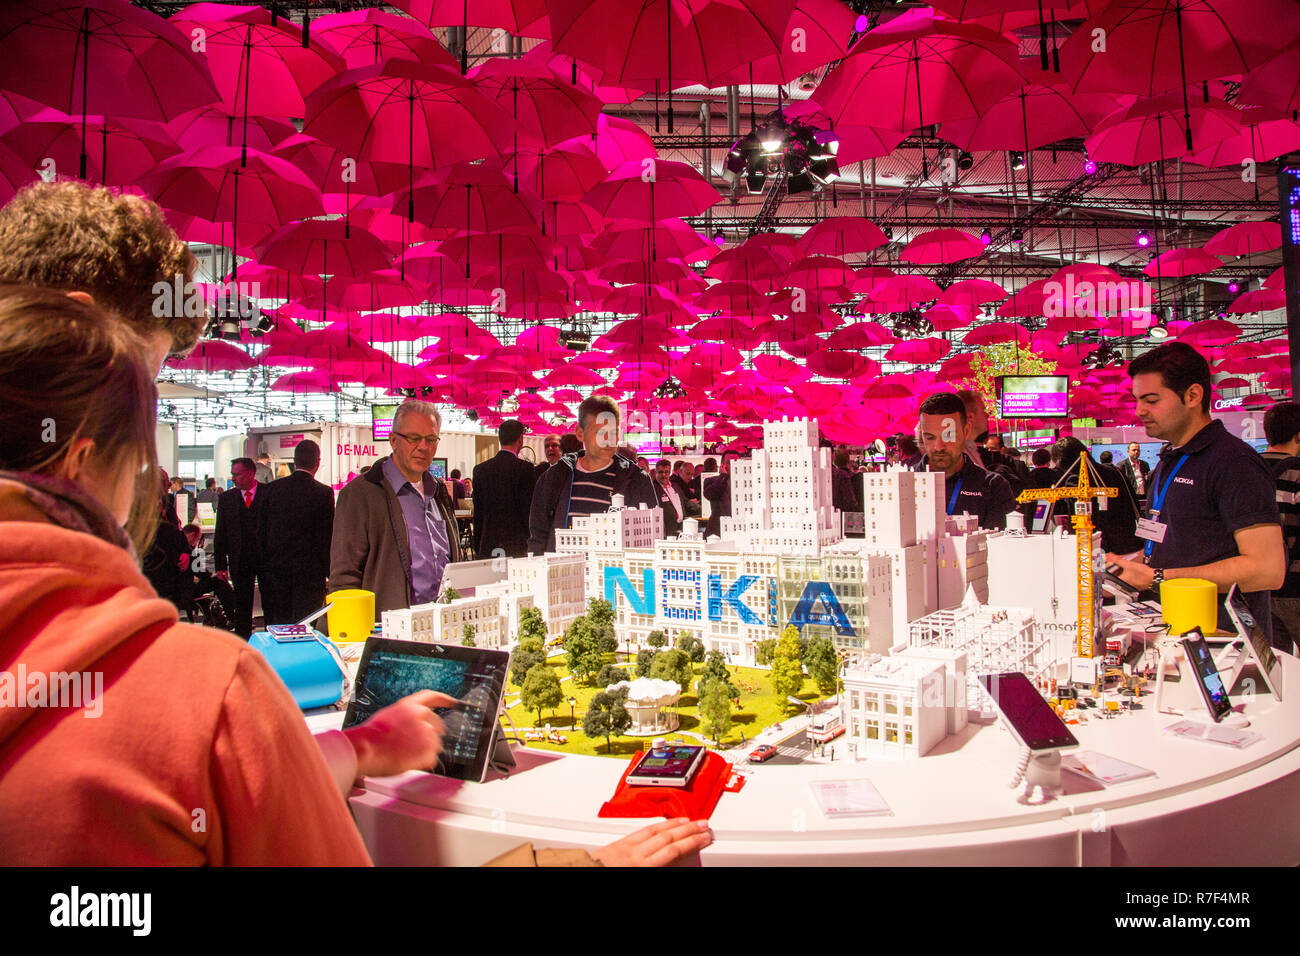 Deutsche Telekom stand, viele Rosa Schirme bilden ein Dach über den Ständer, Computer- Messe CeBIT 2014, Hannover, Niedersachsen Stockfoto